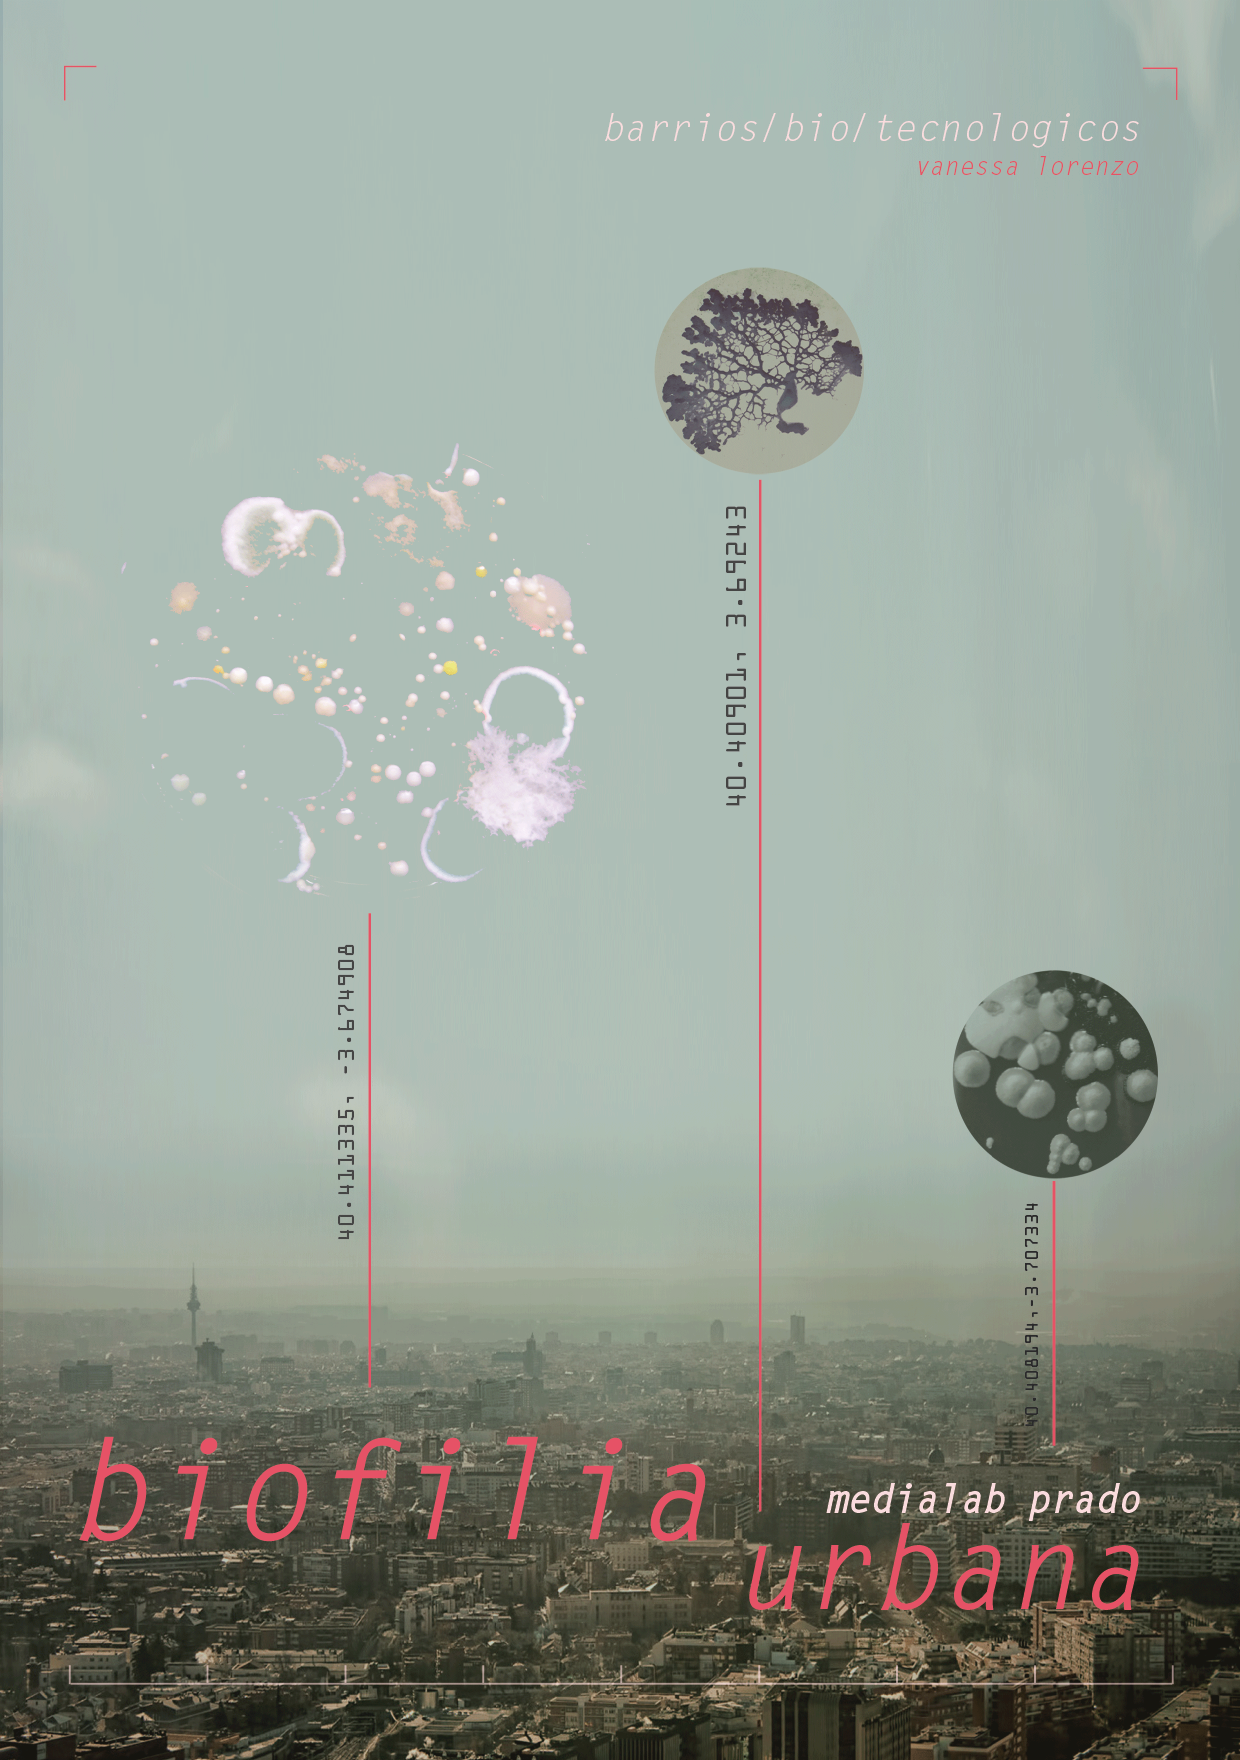 Talleres vinculados al proyecto Biofilia urbana de Vanessa Lorenzo